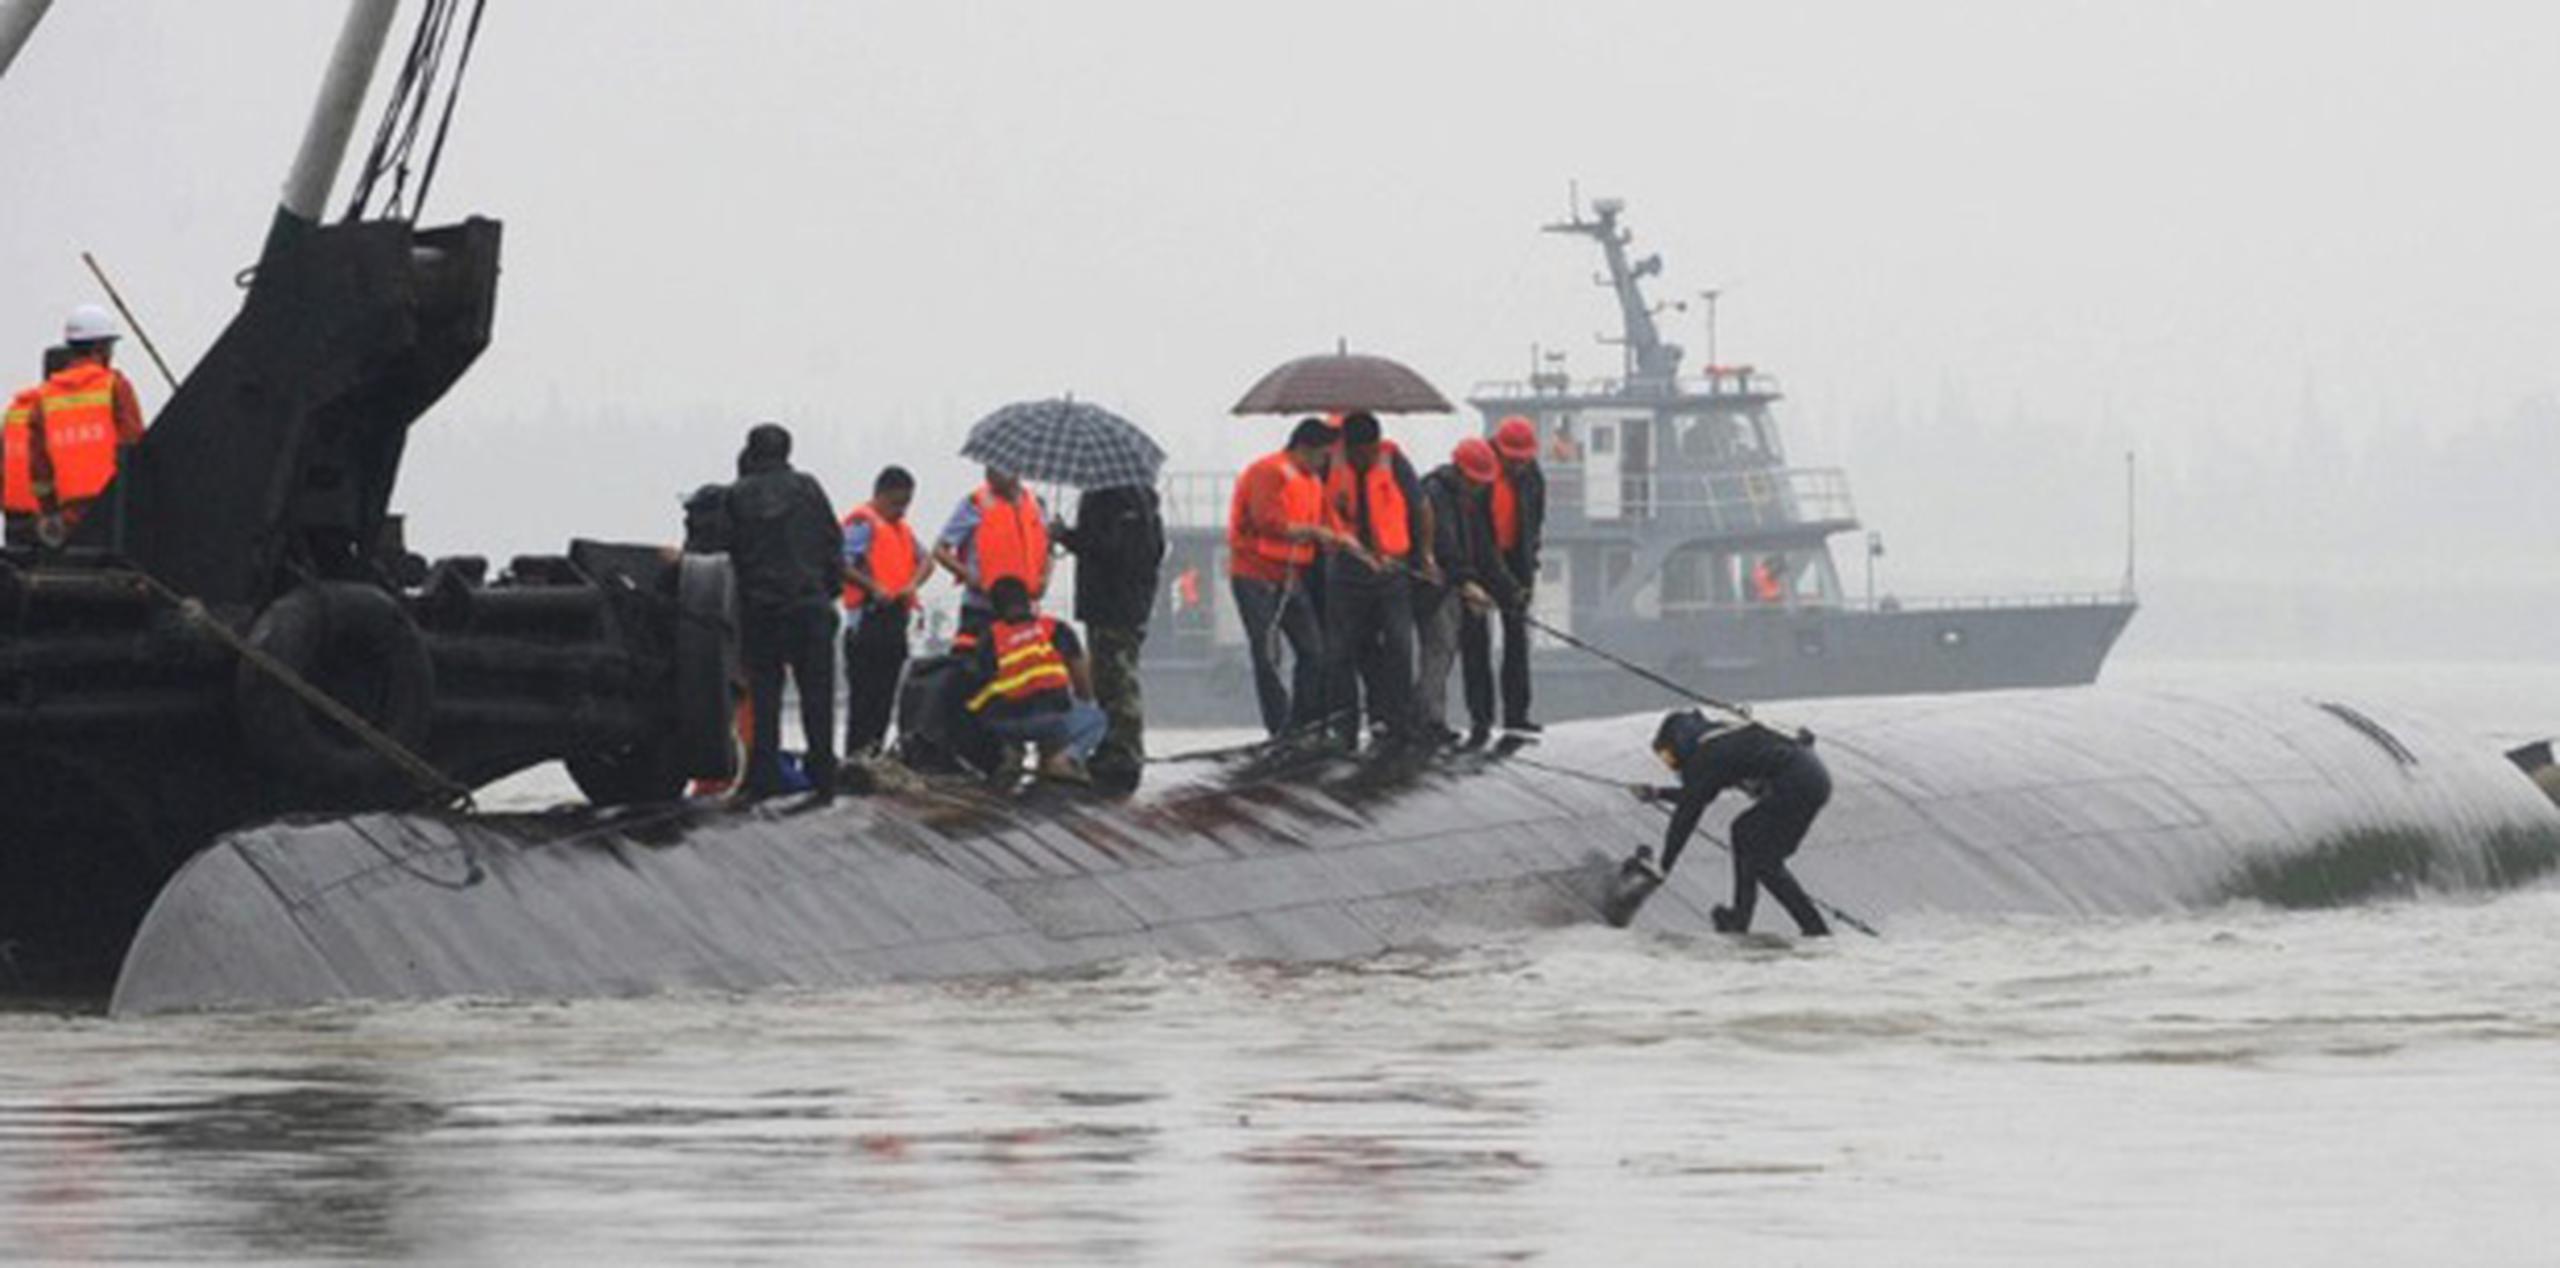 Las imágenes de televisión mostraban a rescatistas con chalecos naranjas trepando al barco que quedó boca abajo. (AFP)